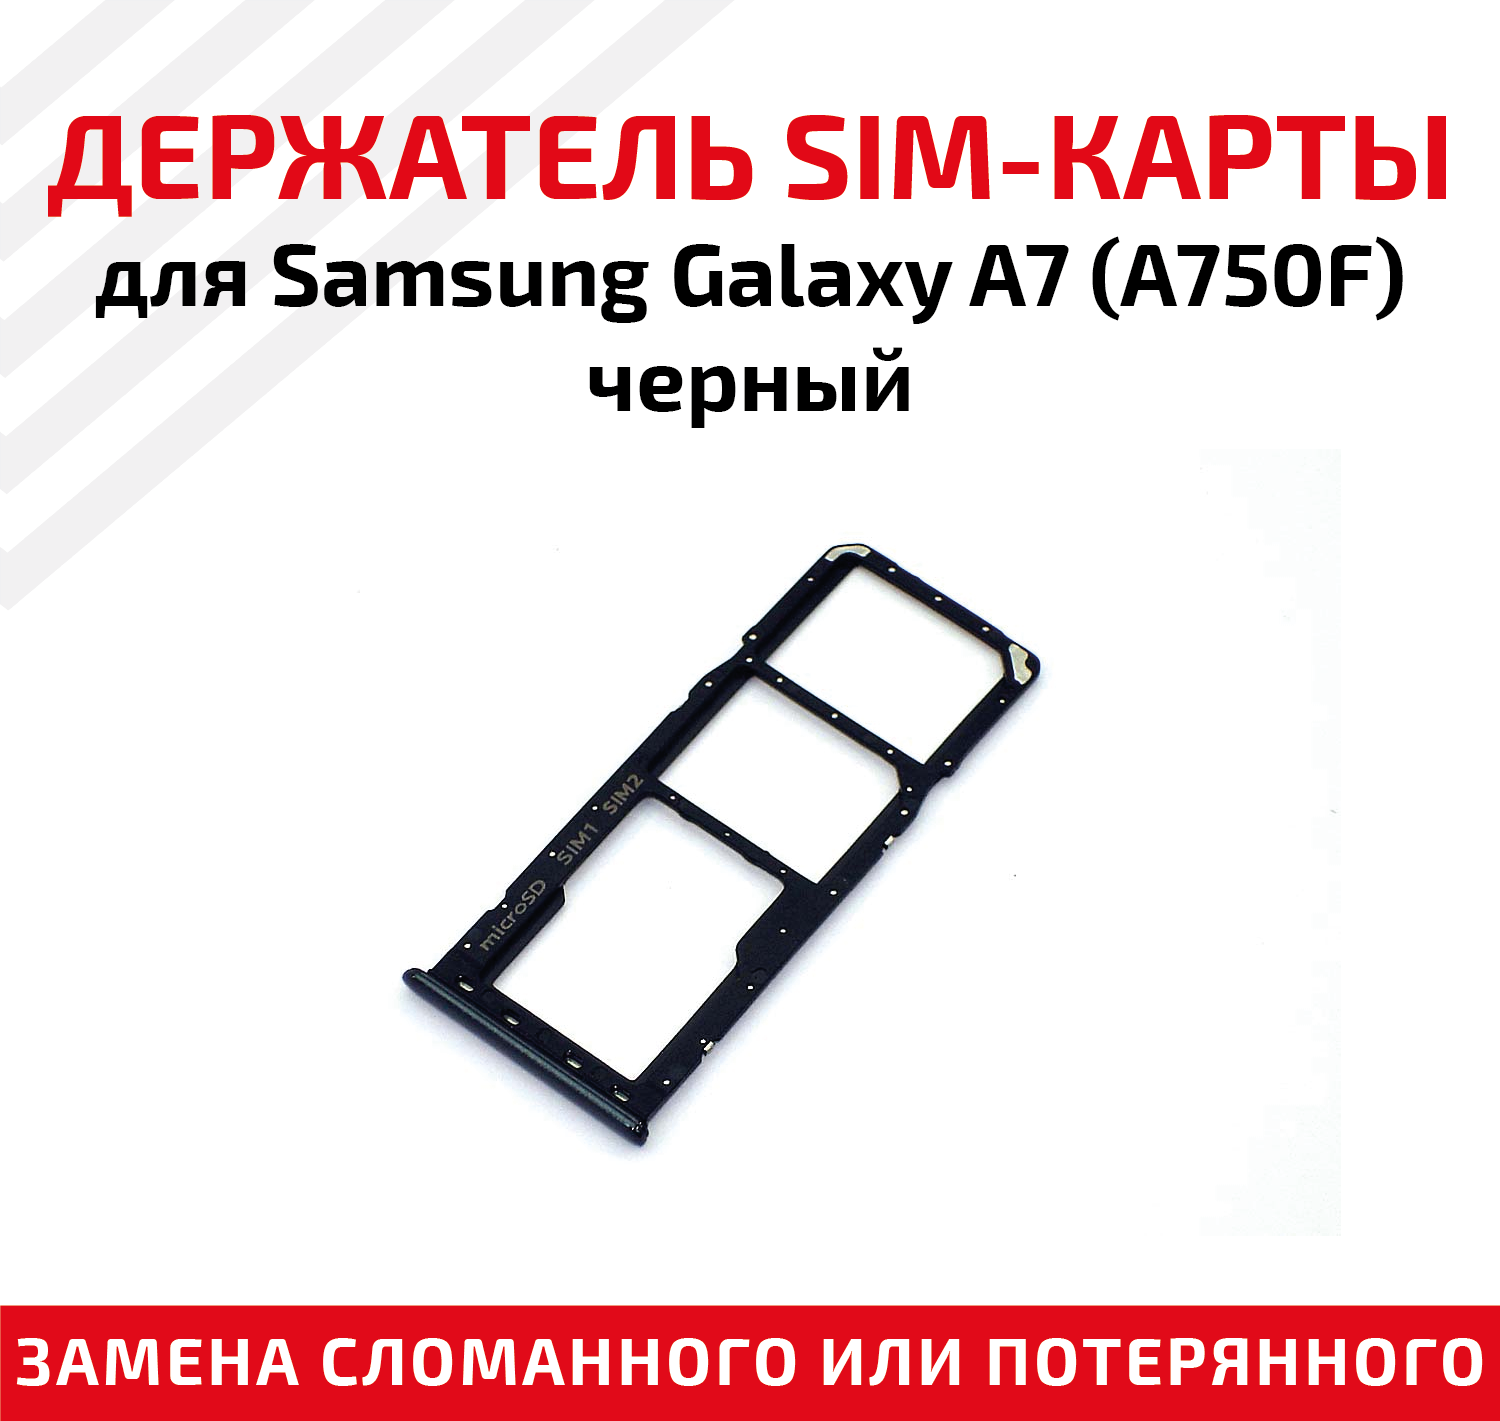 Лоток (держатель, контейнер, слот) SIM-карты для мобильного телефона (смартфона) Samsung Galaxy A7 (A750F), черный